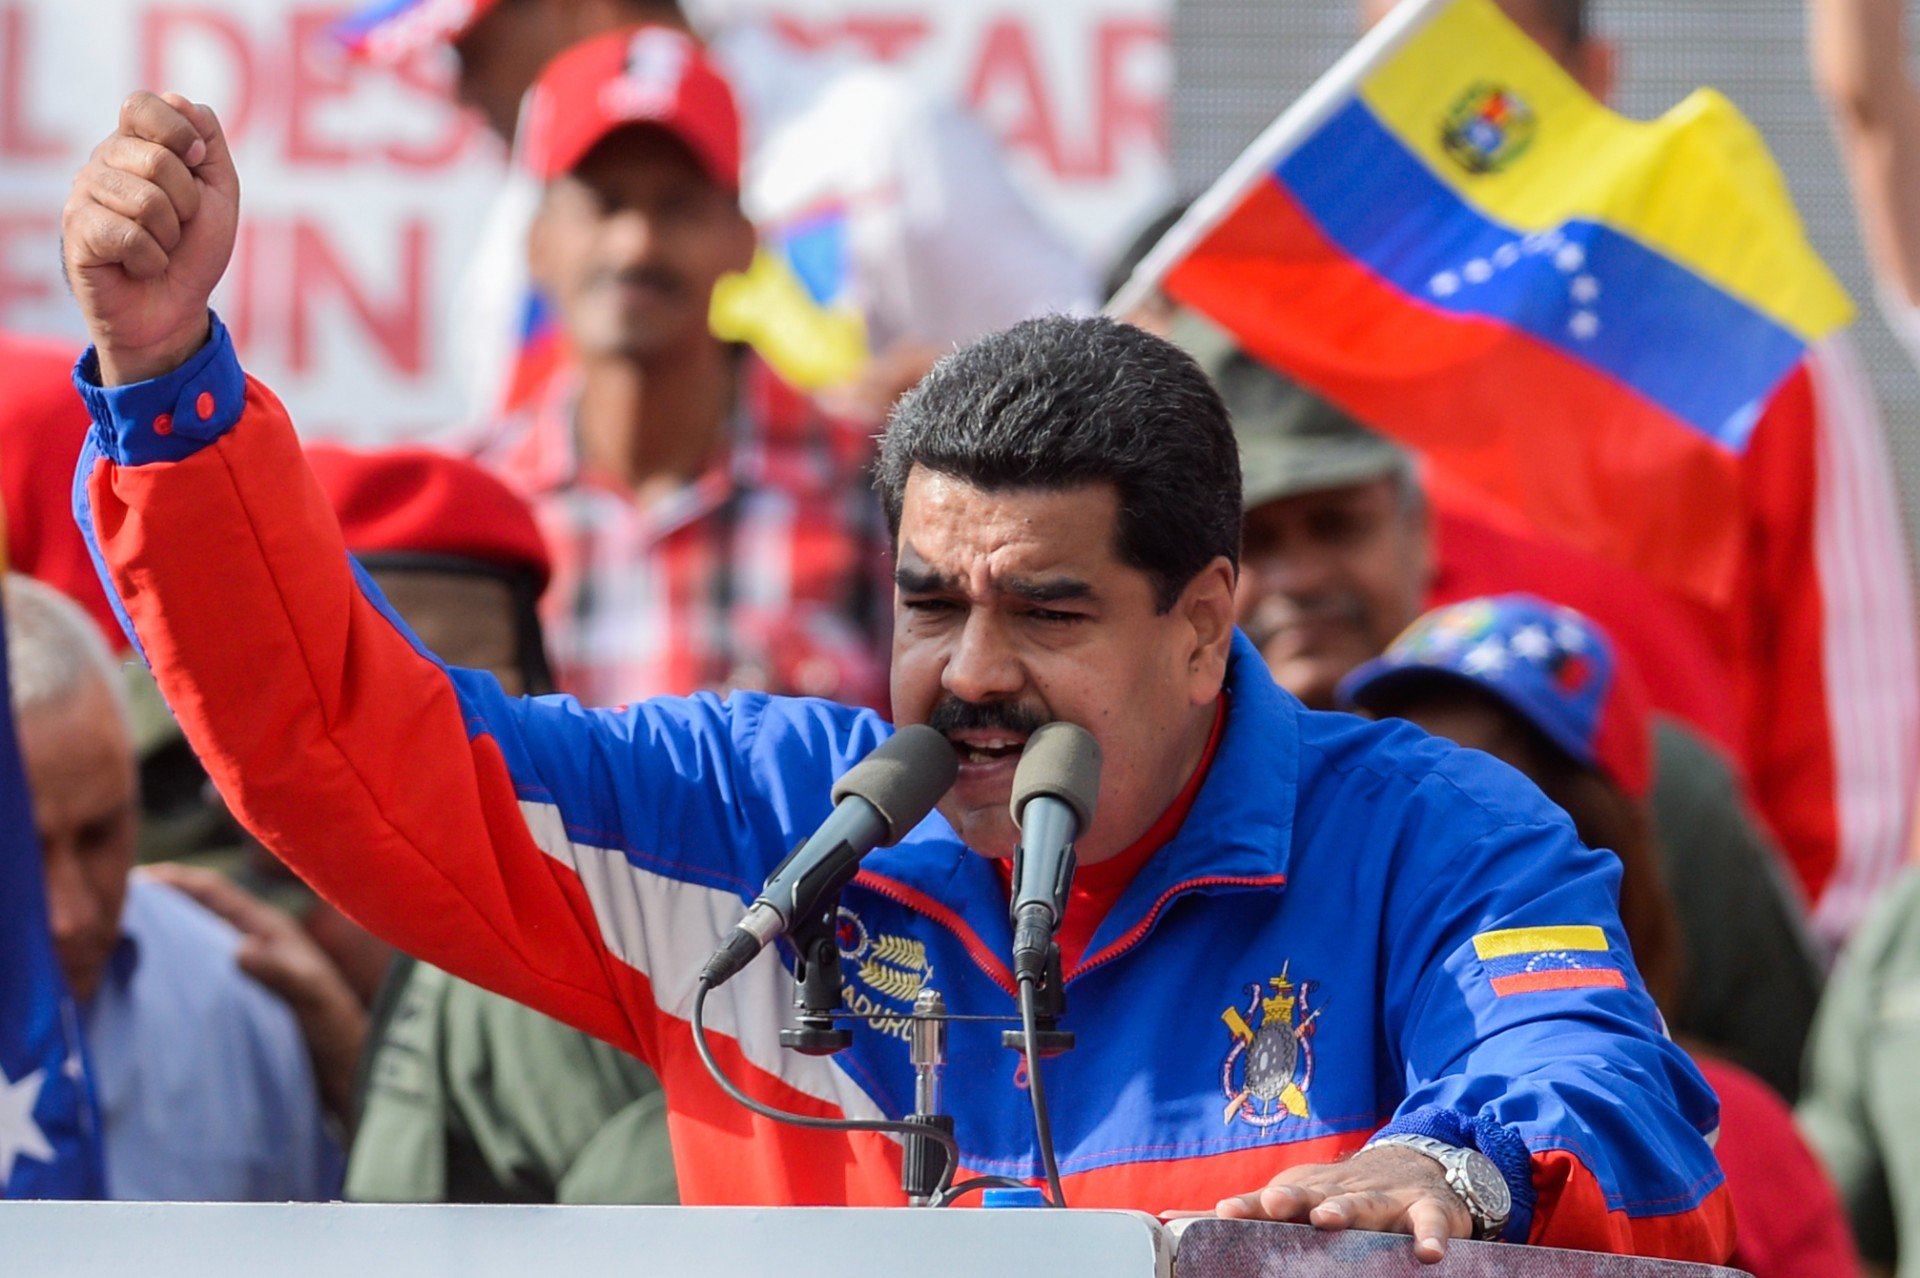 Nicolás Maduro fala sobre "banho de sangue" e "guerra civil" caso não for reeleito